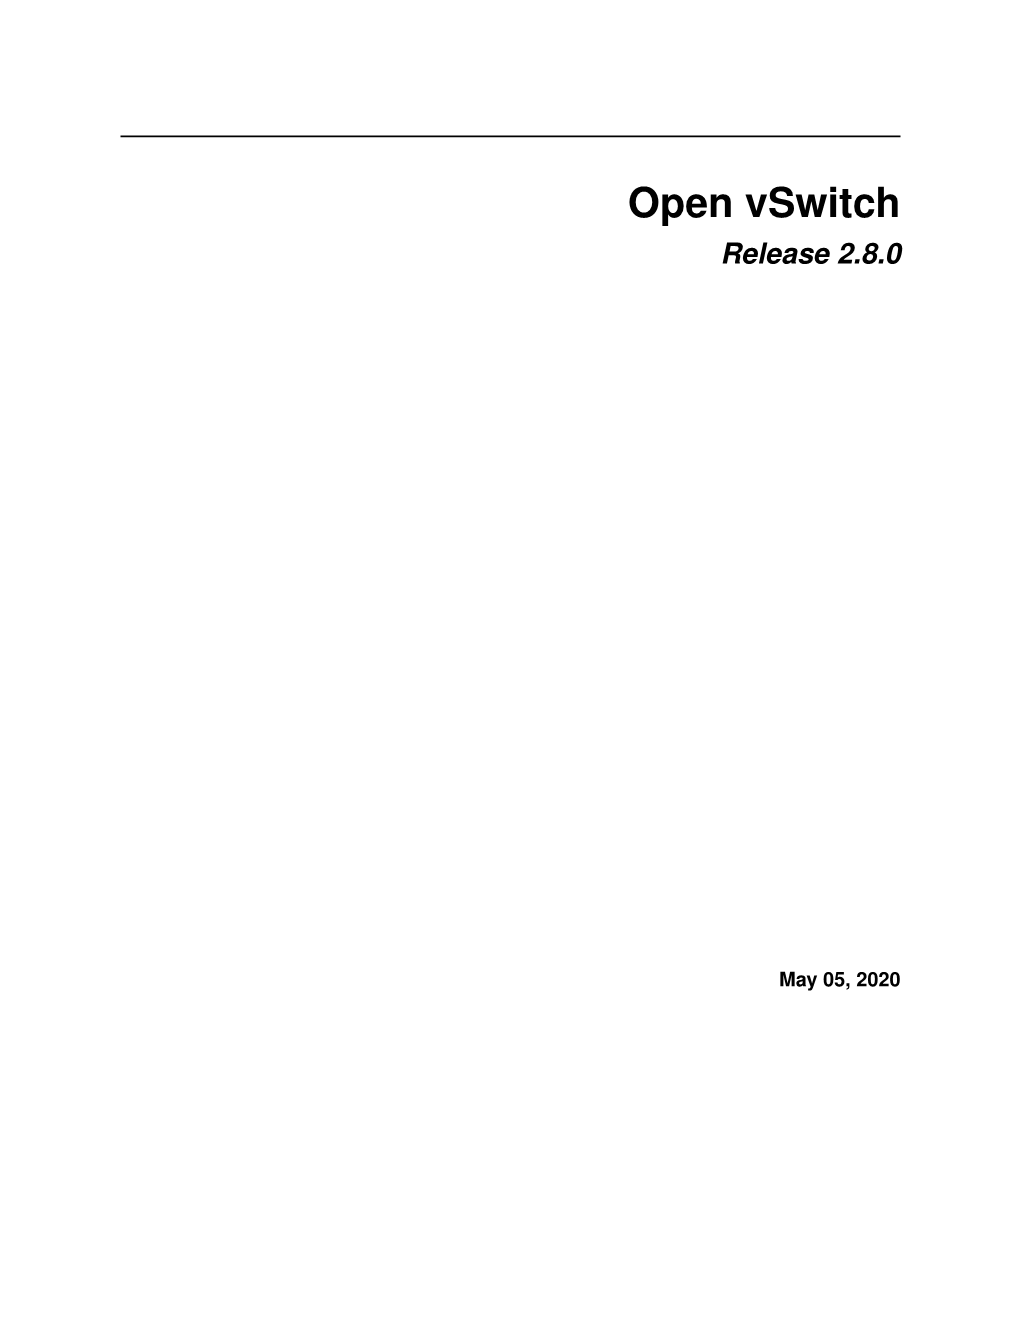 Open Vswitch Release 2.8.0